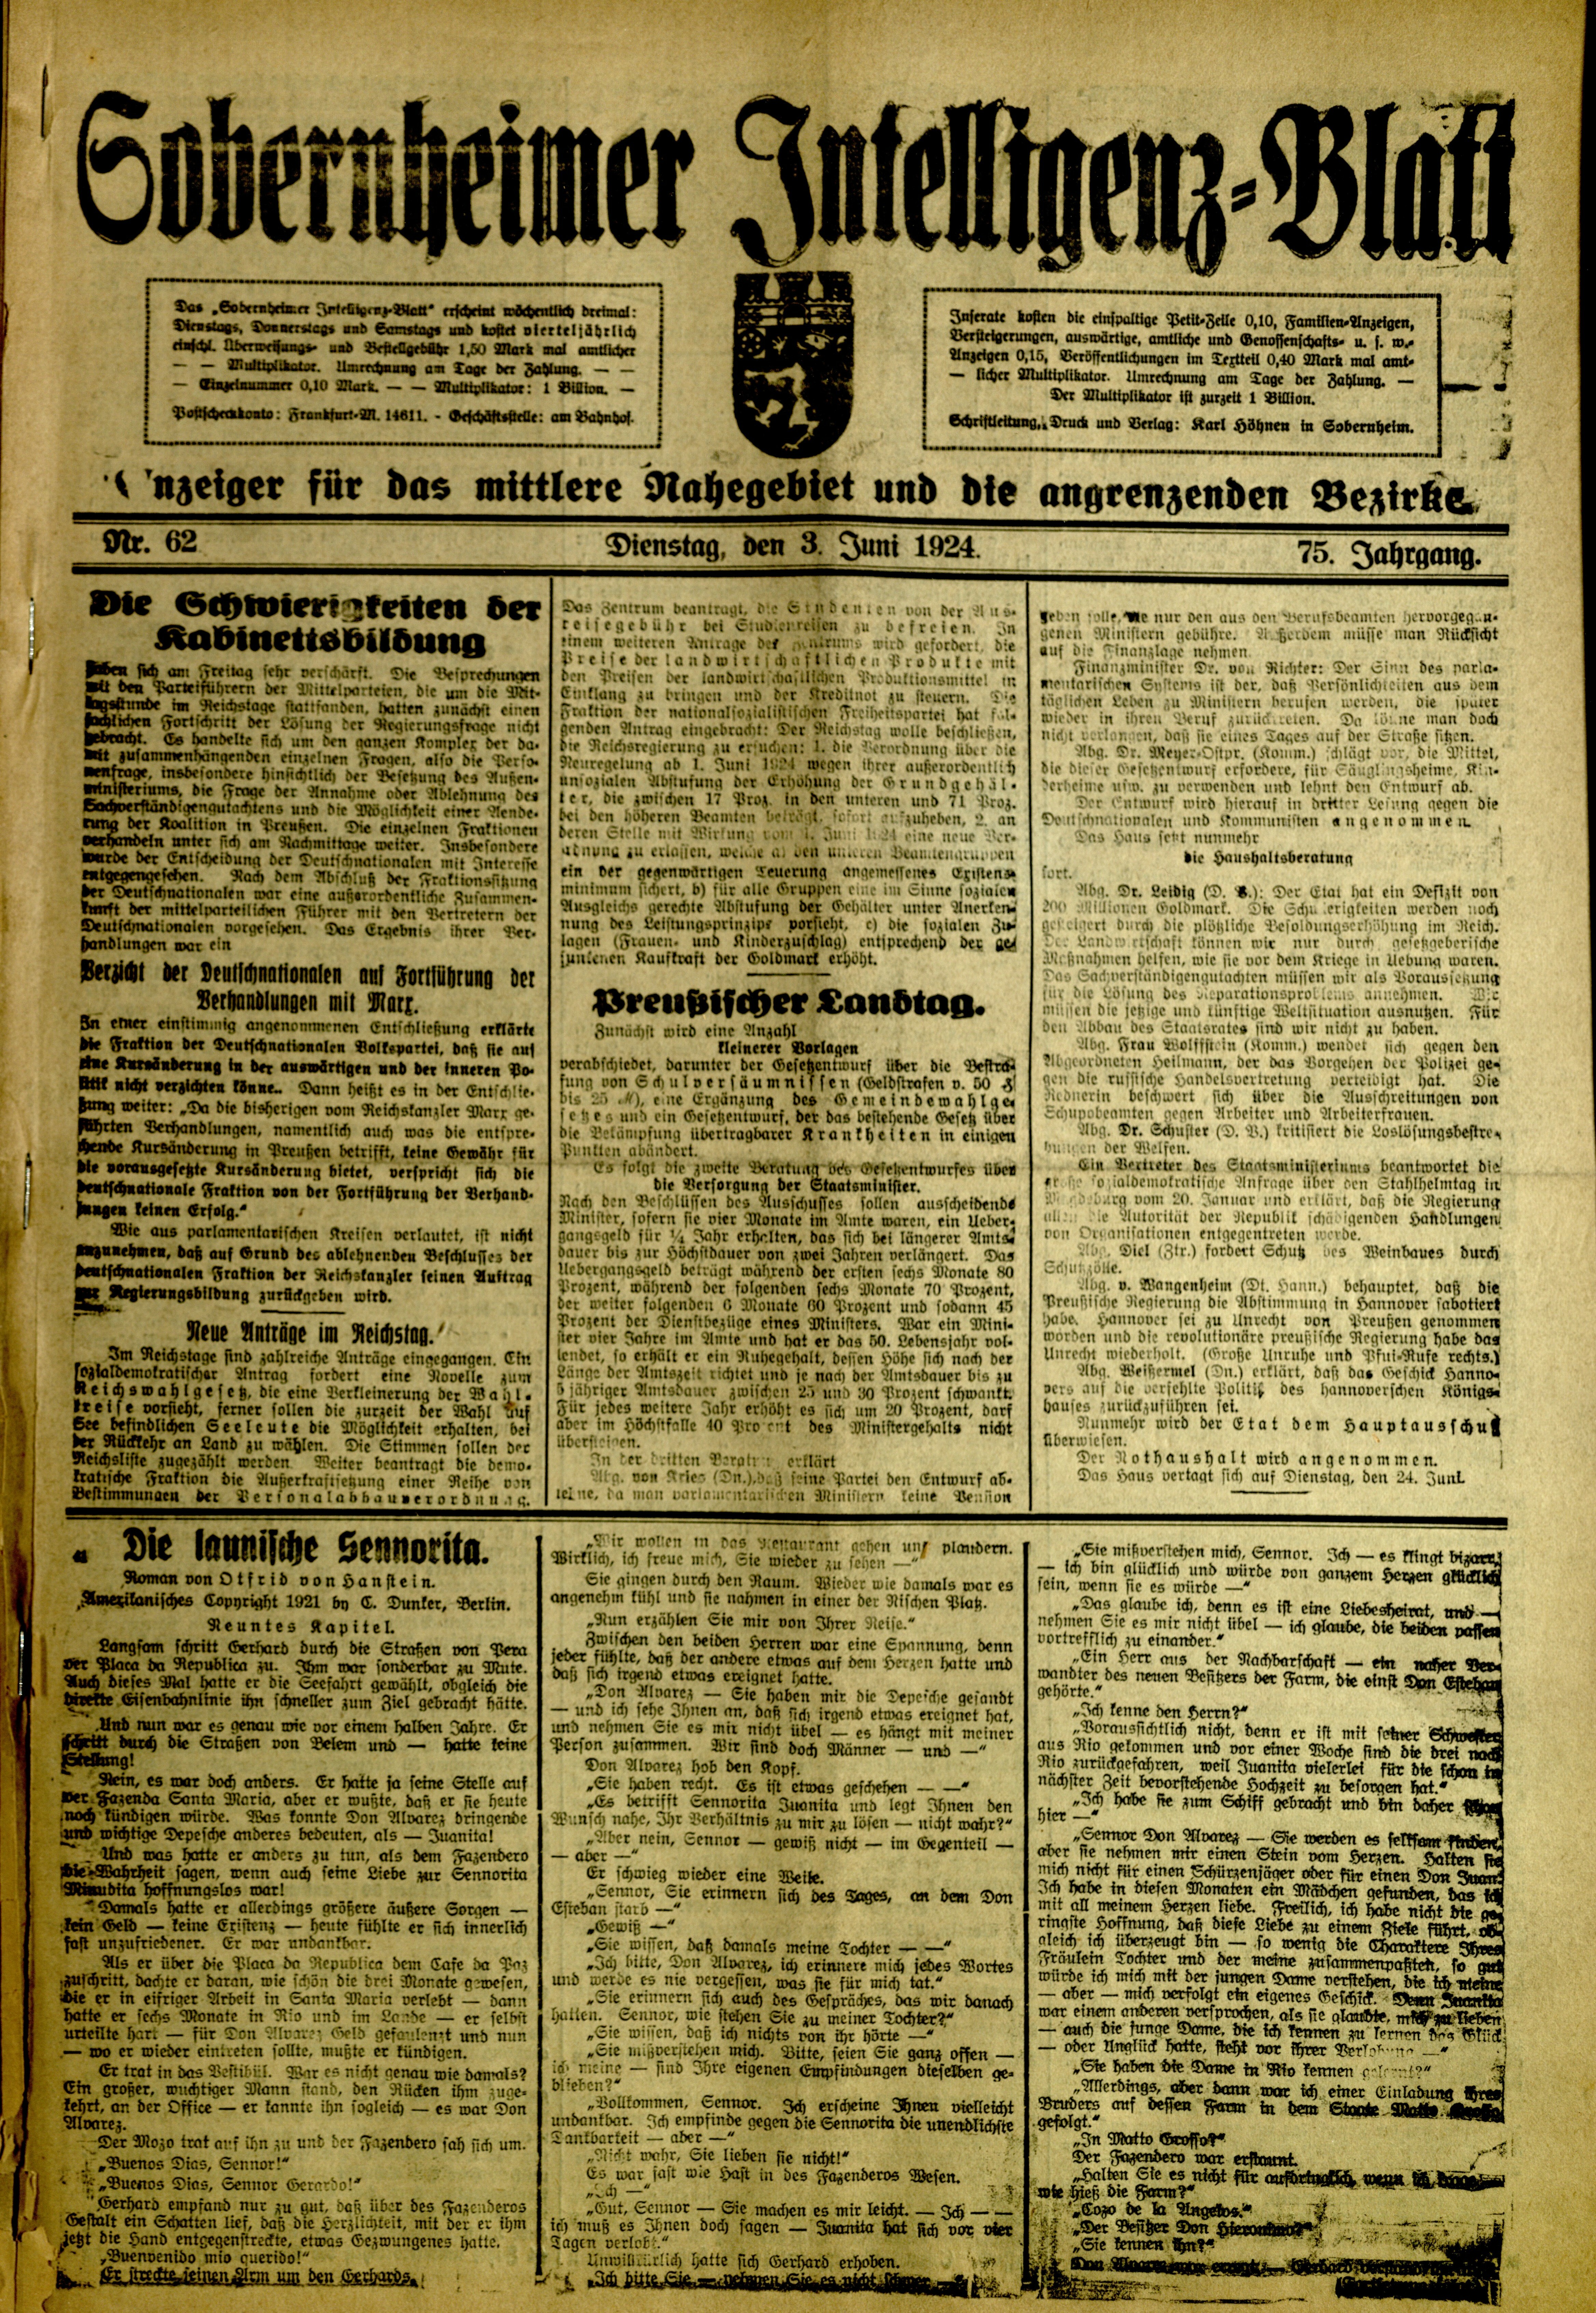 Zeitung: Sobernheimer Intelligenzblatt; Juni 1924, Jg. 73 Nr. 62 (Heimatmuseum Bad Sobernheim CC BY-NC-SA)